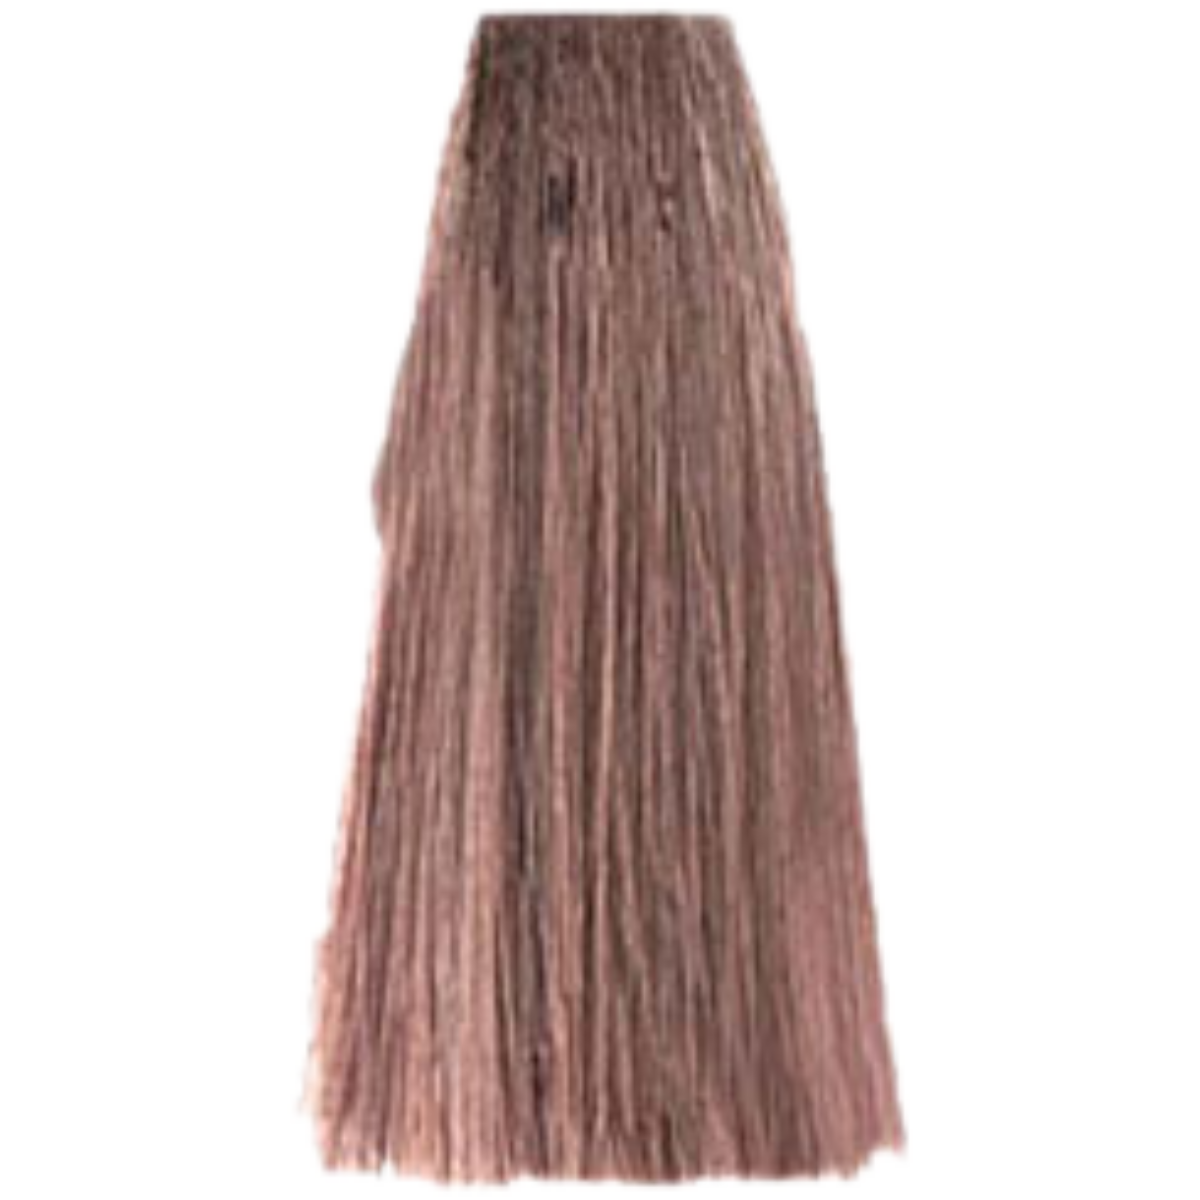 צבע שיער 8.7 LIGHT BLONDE BROWN פארמויטה FarmaVita צבע לשיער 100 גרם